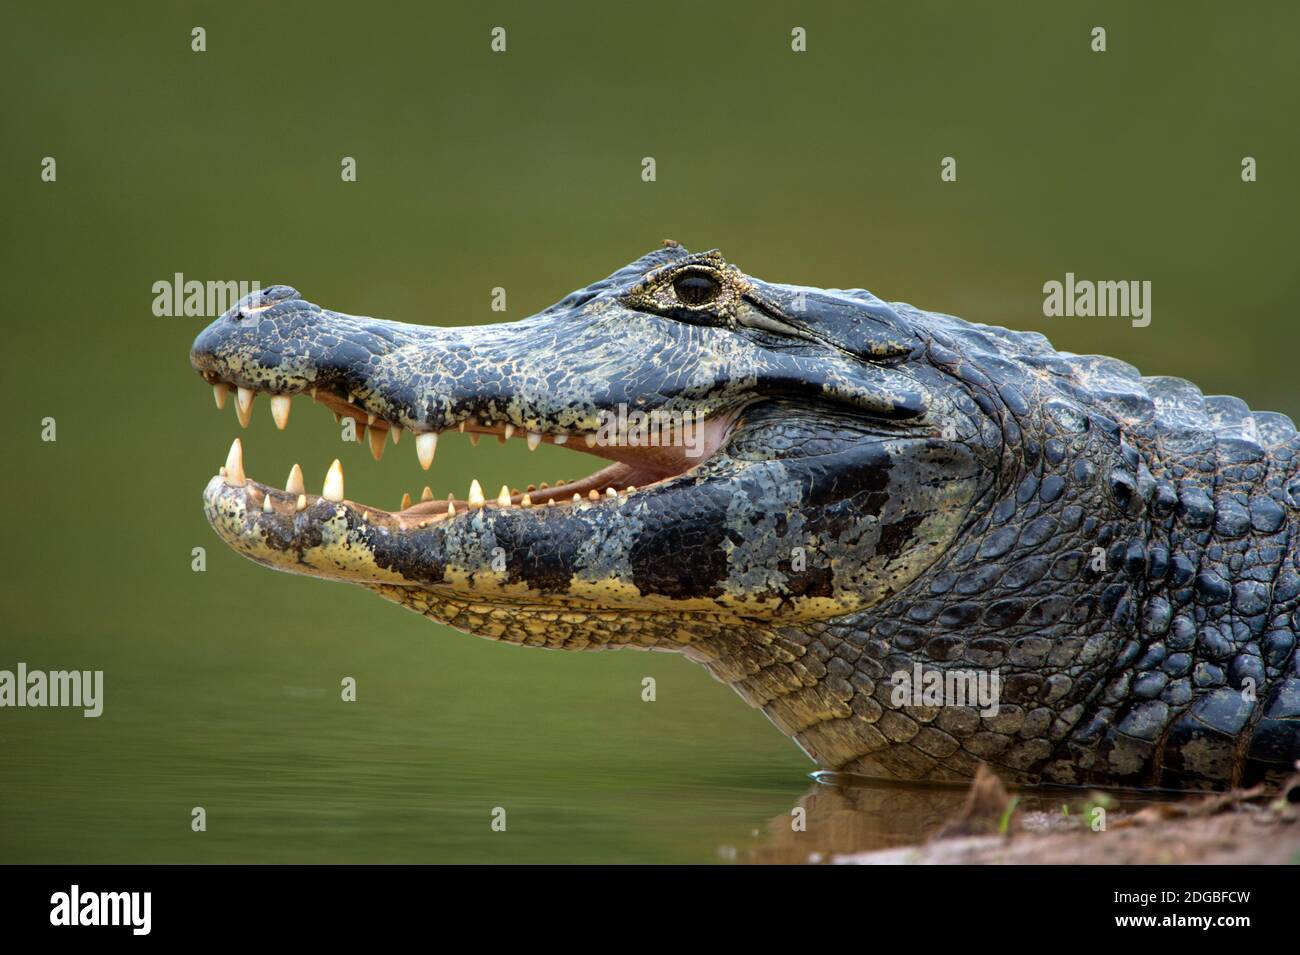 Pantanal caiman, Pantanal Wetlands, Brazil Stock Photo